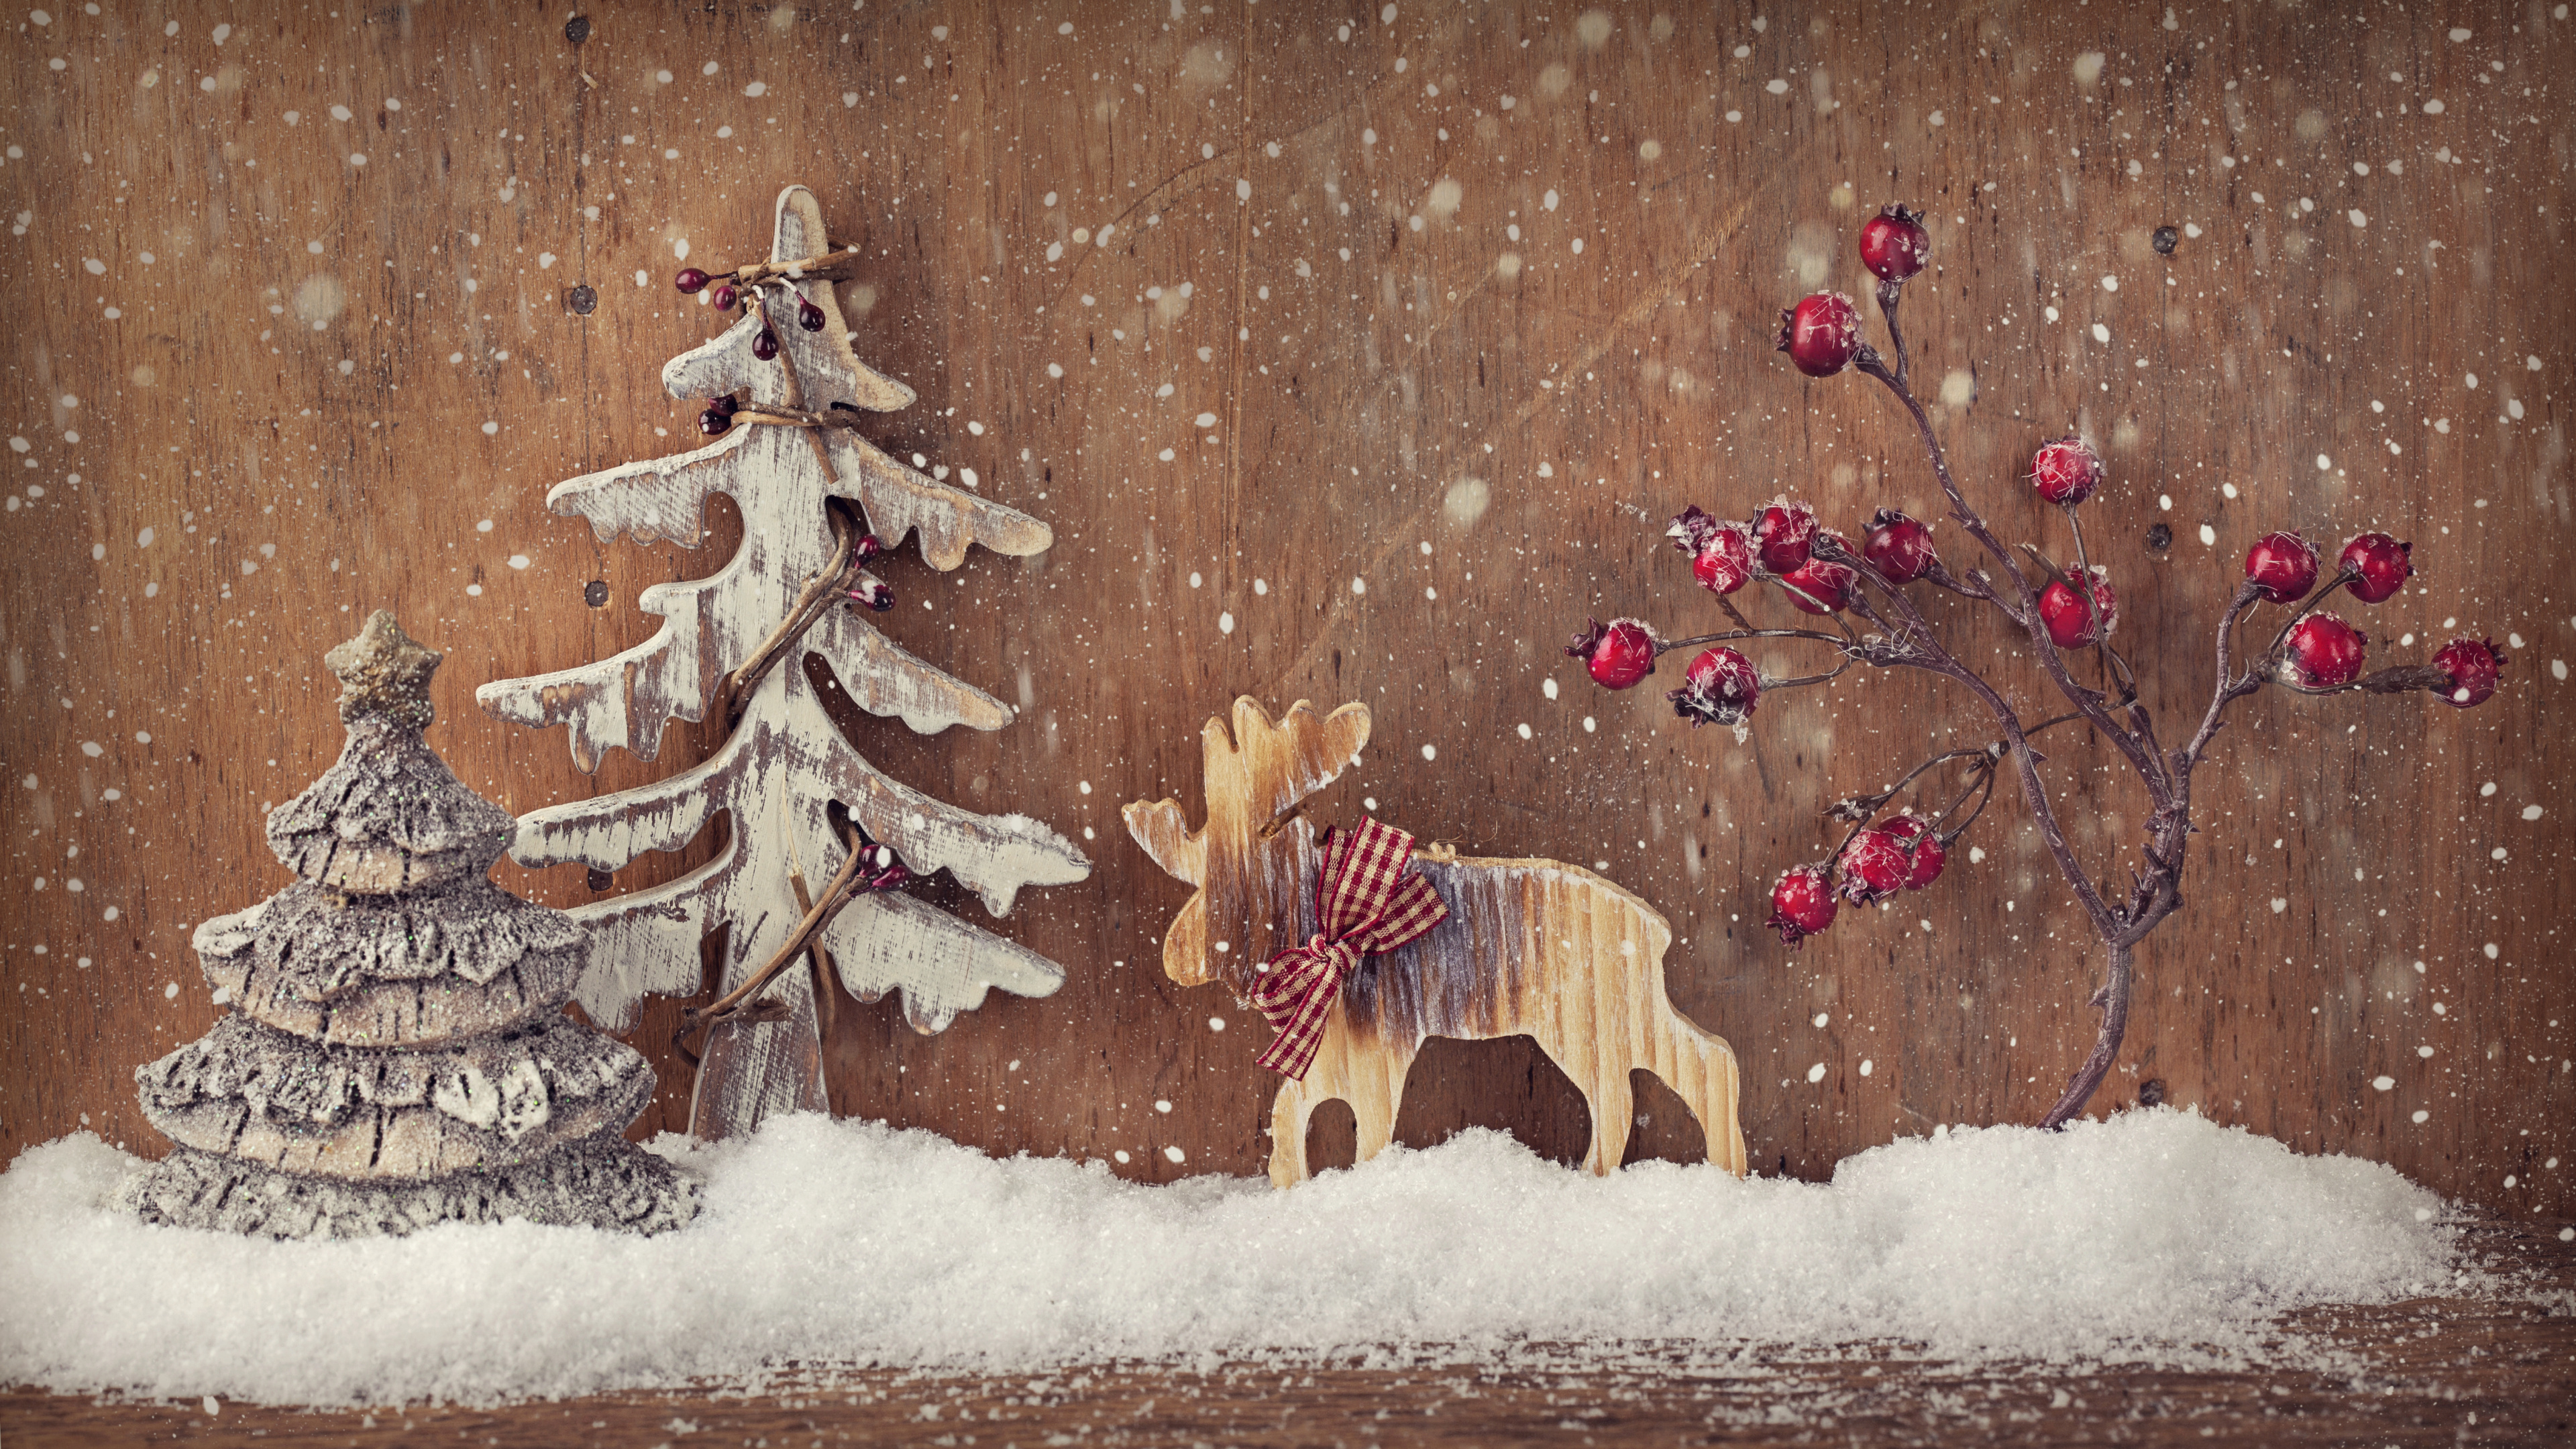 Le Jour De Noël, Arbre de Noël, Décoration de Noël, Hiver, Neige. Wallpaper in 3840x2160 Resolution